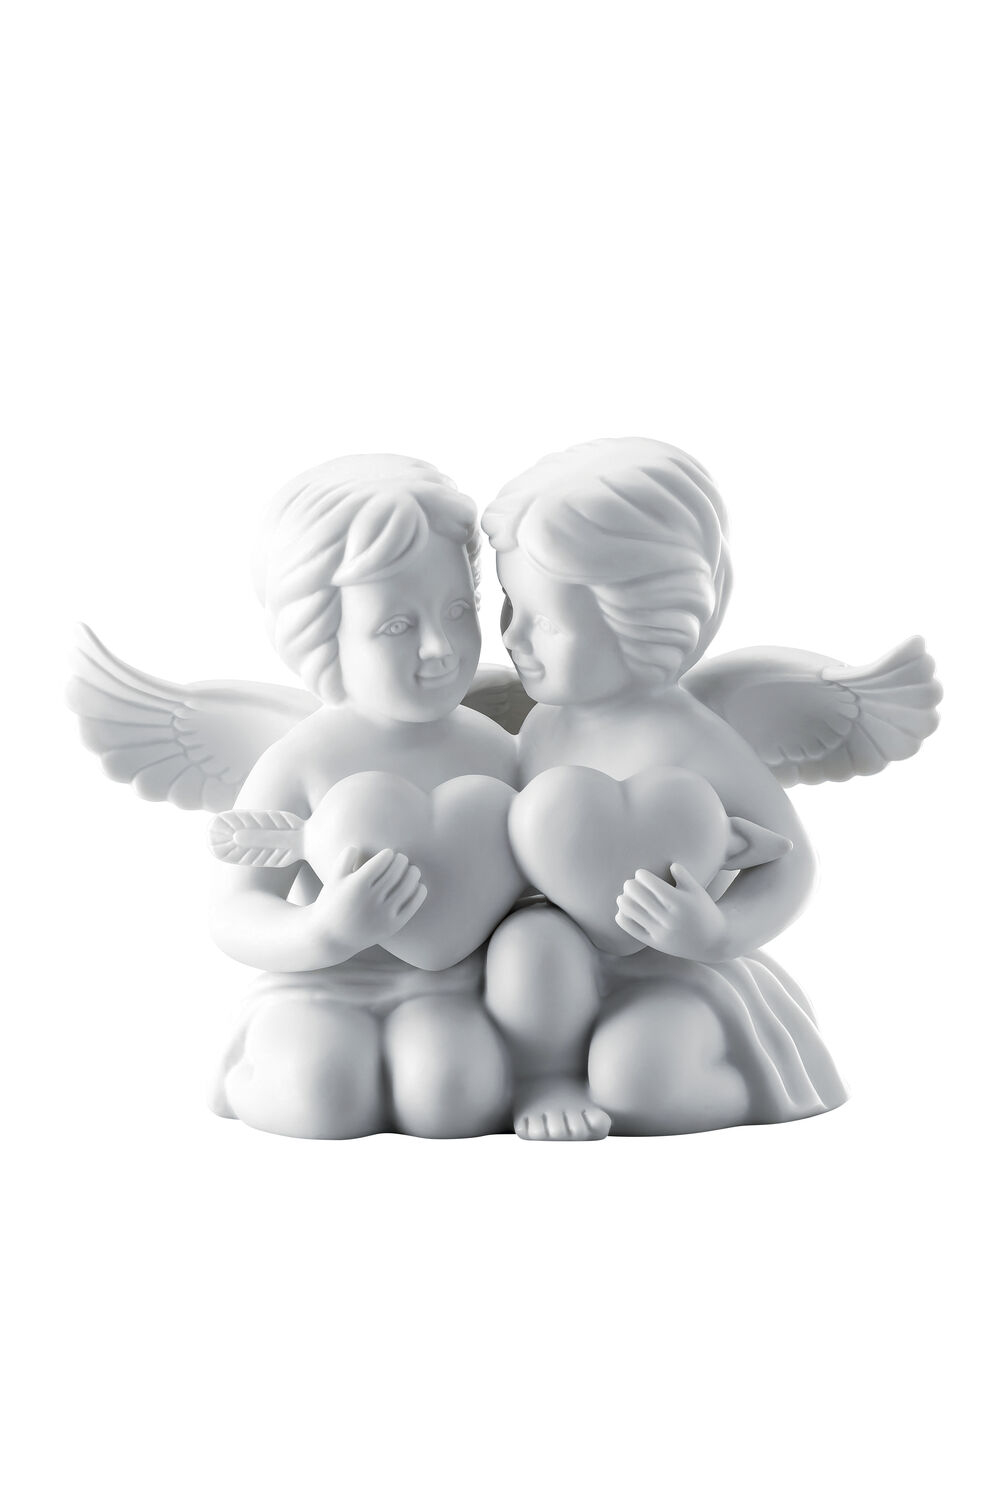 Фигурка Rosenthal Ангелы с сердцем 14,5 см, фарфор - фото 1